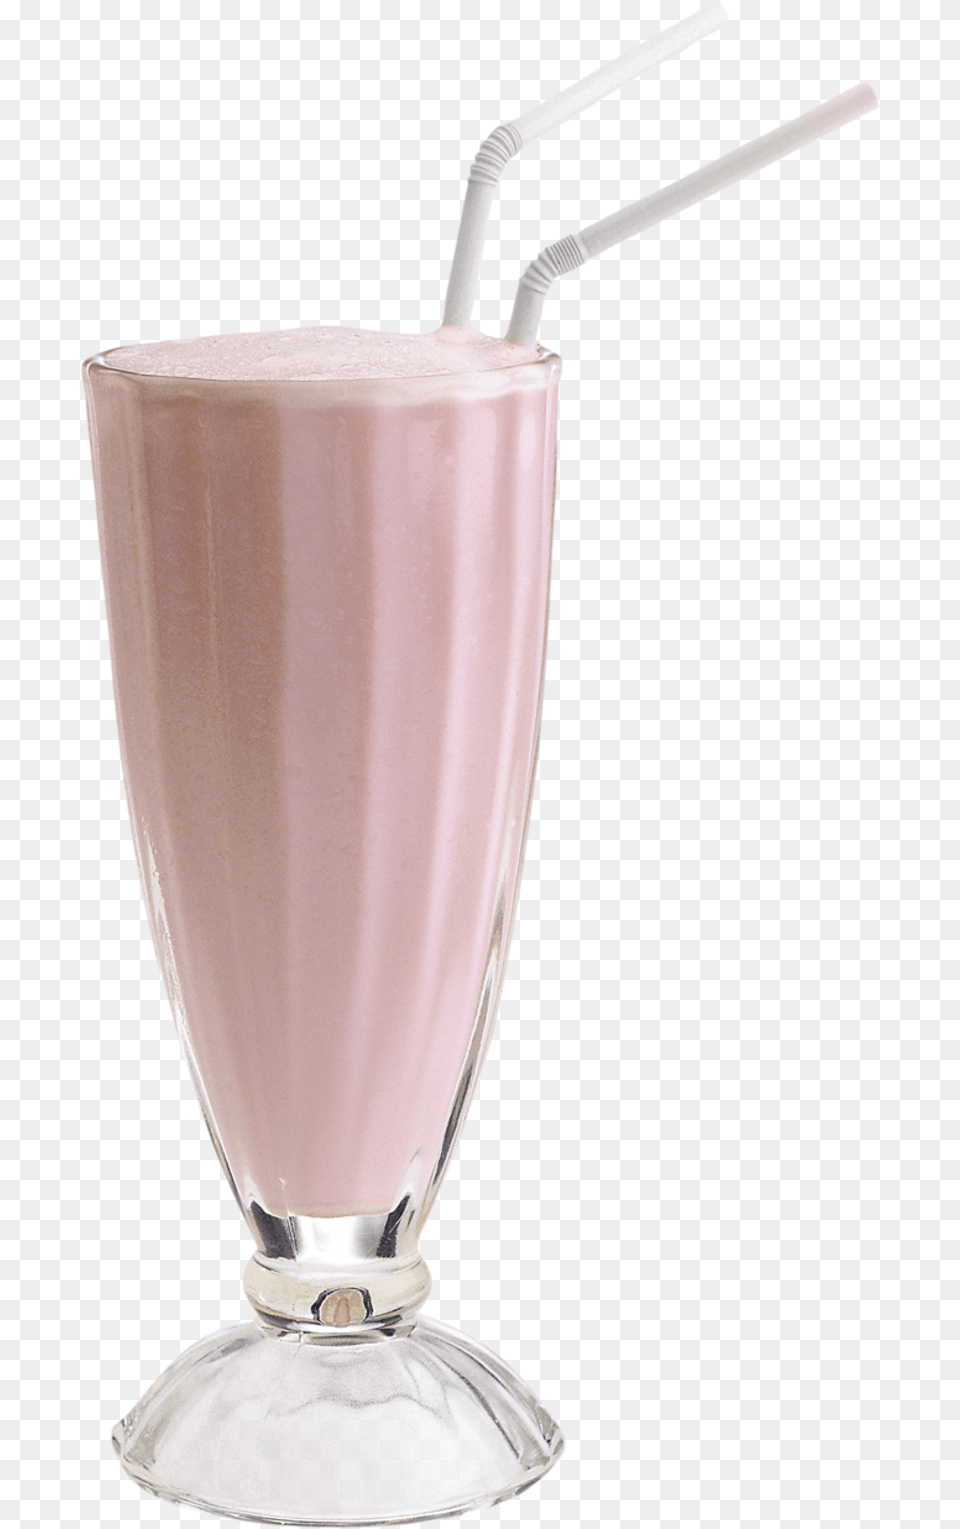 Milkshake Download Image Aesthetic, Beverage, Juice, Milk, Smoothie Png